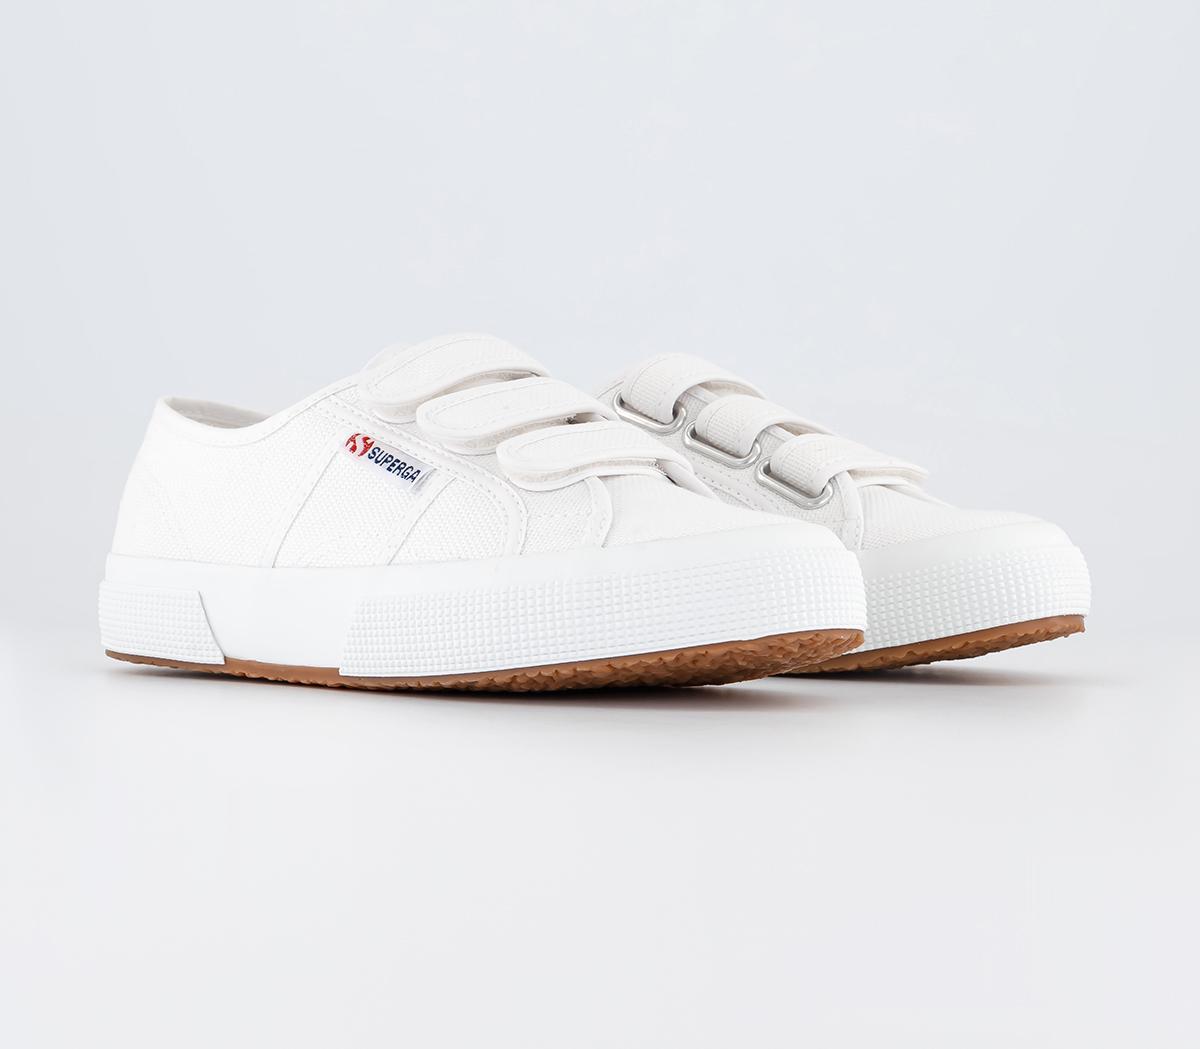 Superga Womens 2750 Strap Shoes White, 5.5